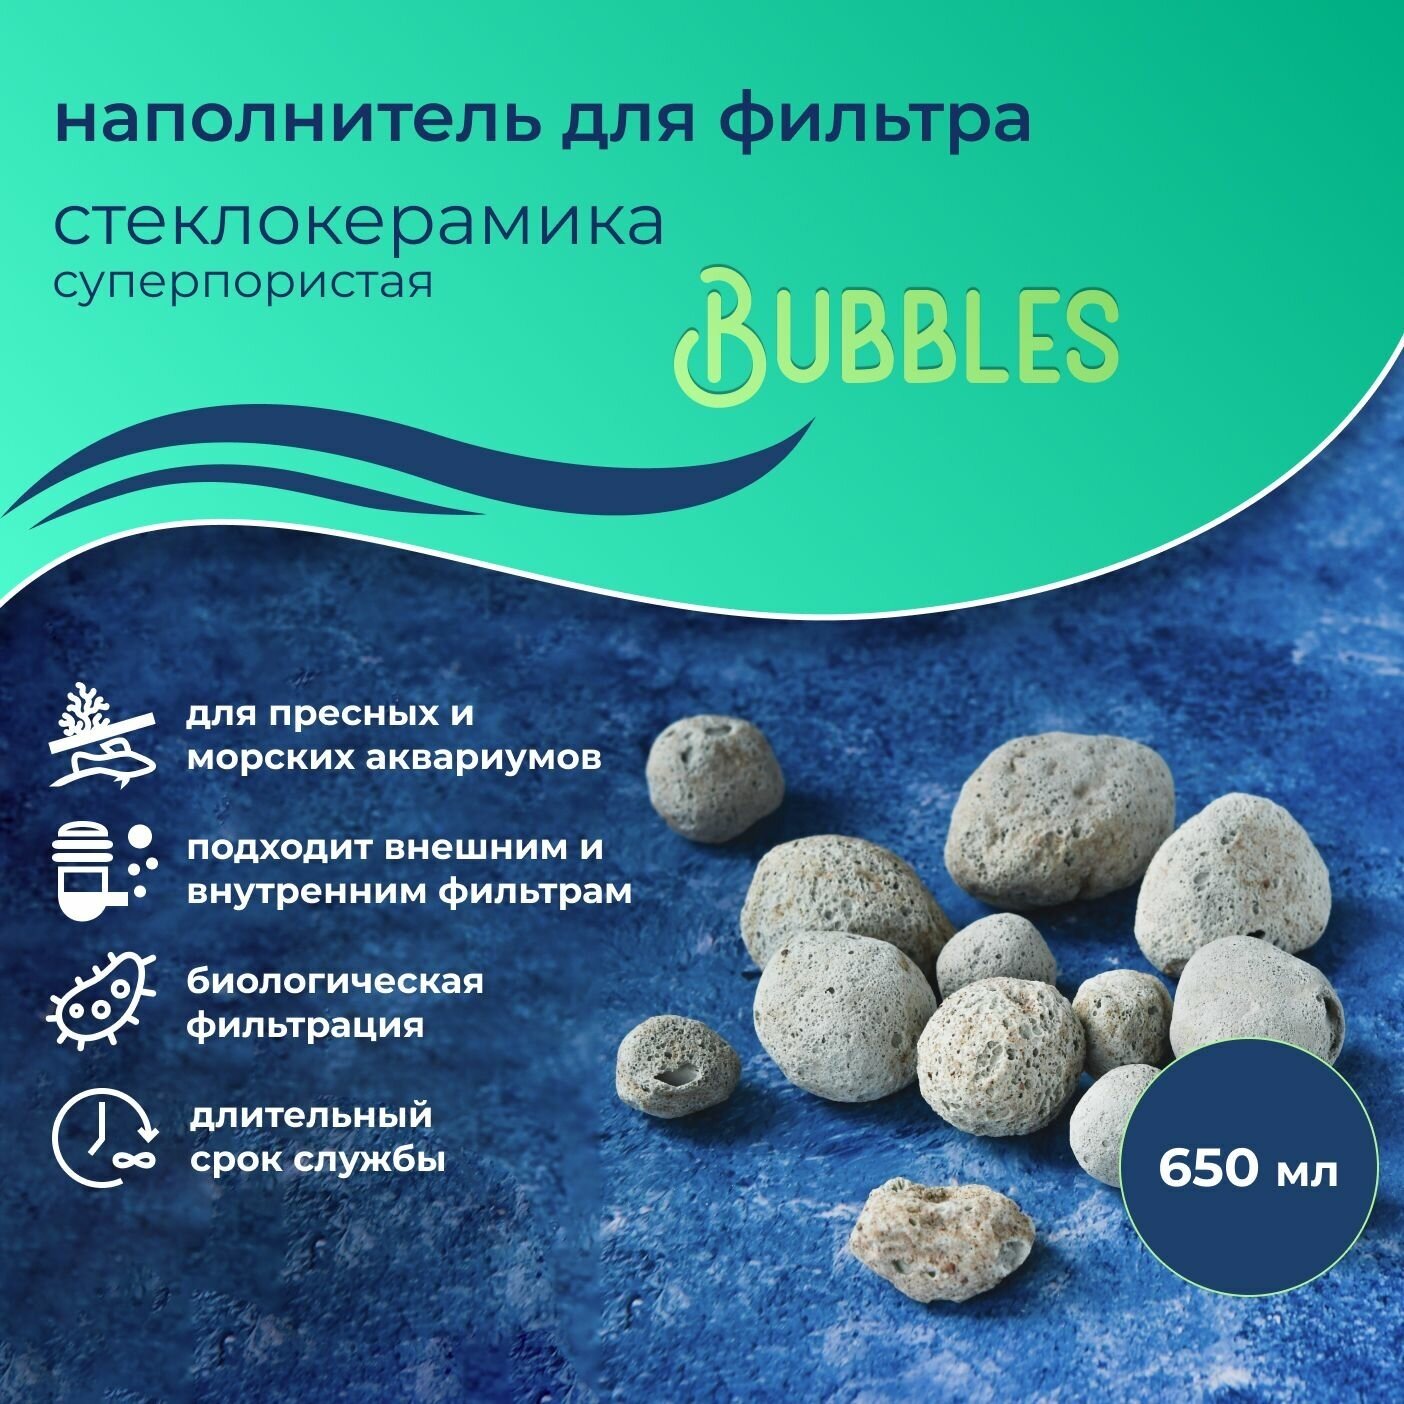 WAVES "Bubbles" Стеклокерамика суперпористая, 650 мл, наполнитель для аквариумного фильтра, шарообразный, для заселения бактерий